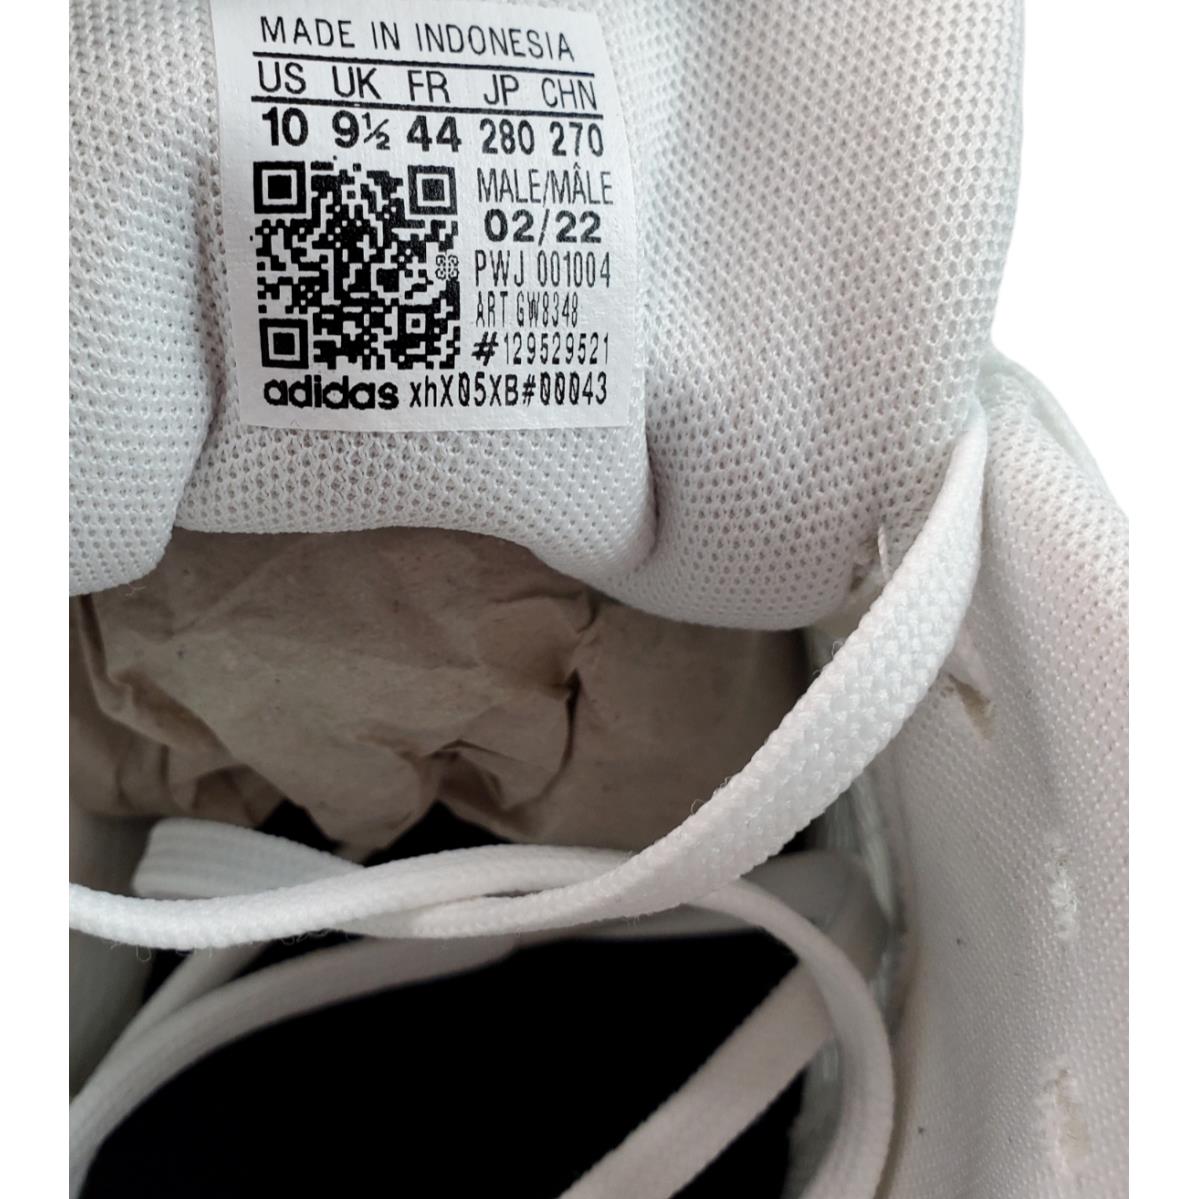 Adidas shoes Duramo - Multicolor 5